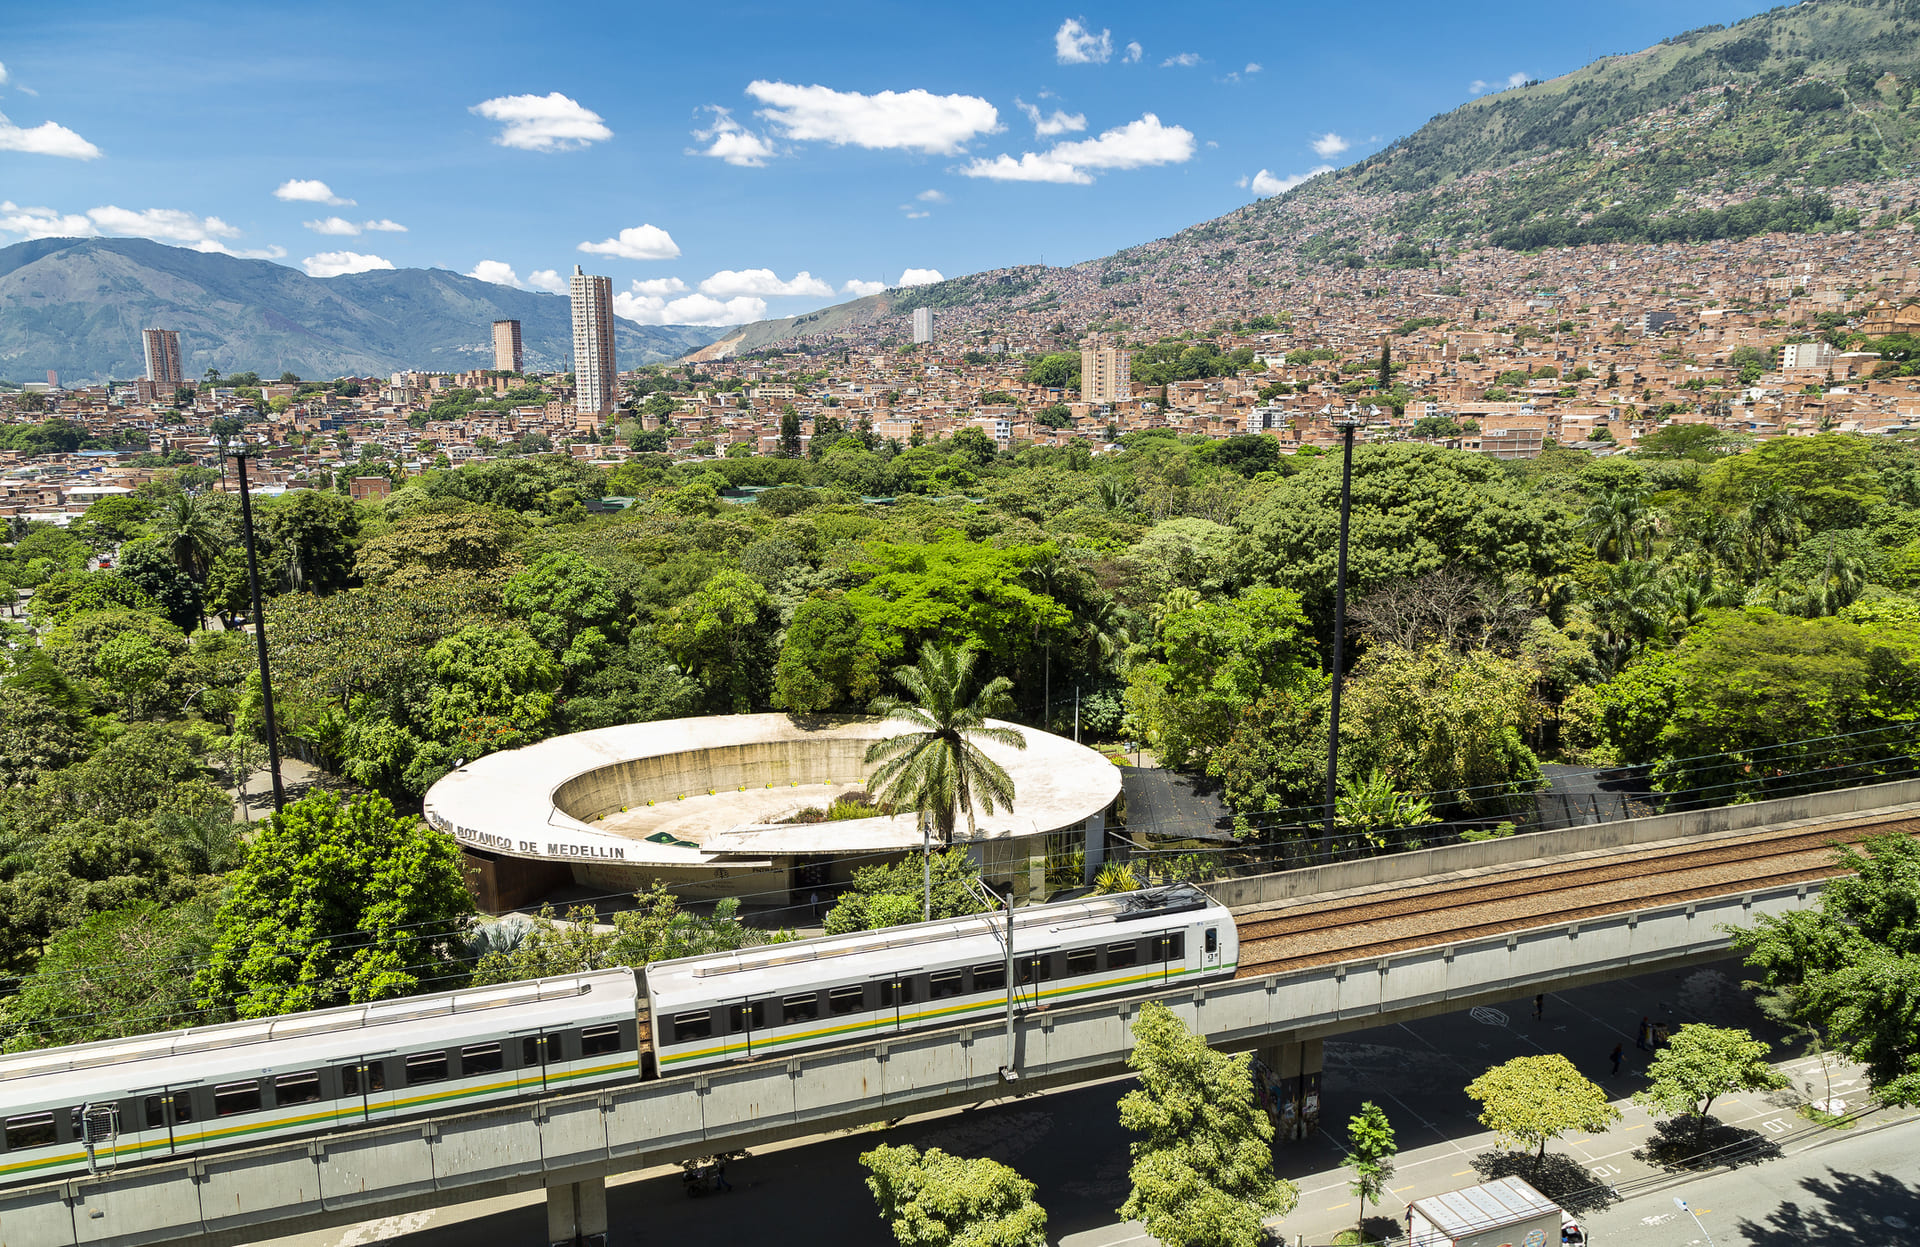 Alquiler de Carros en Medellín: Tarifas, Requisitos y Consejos